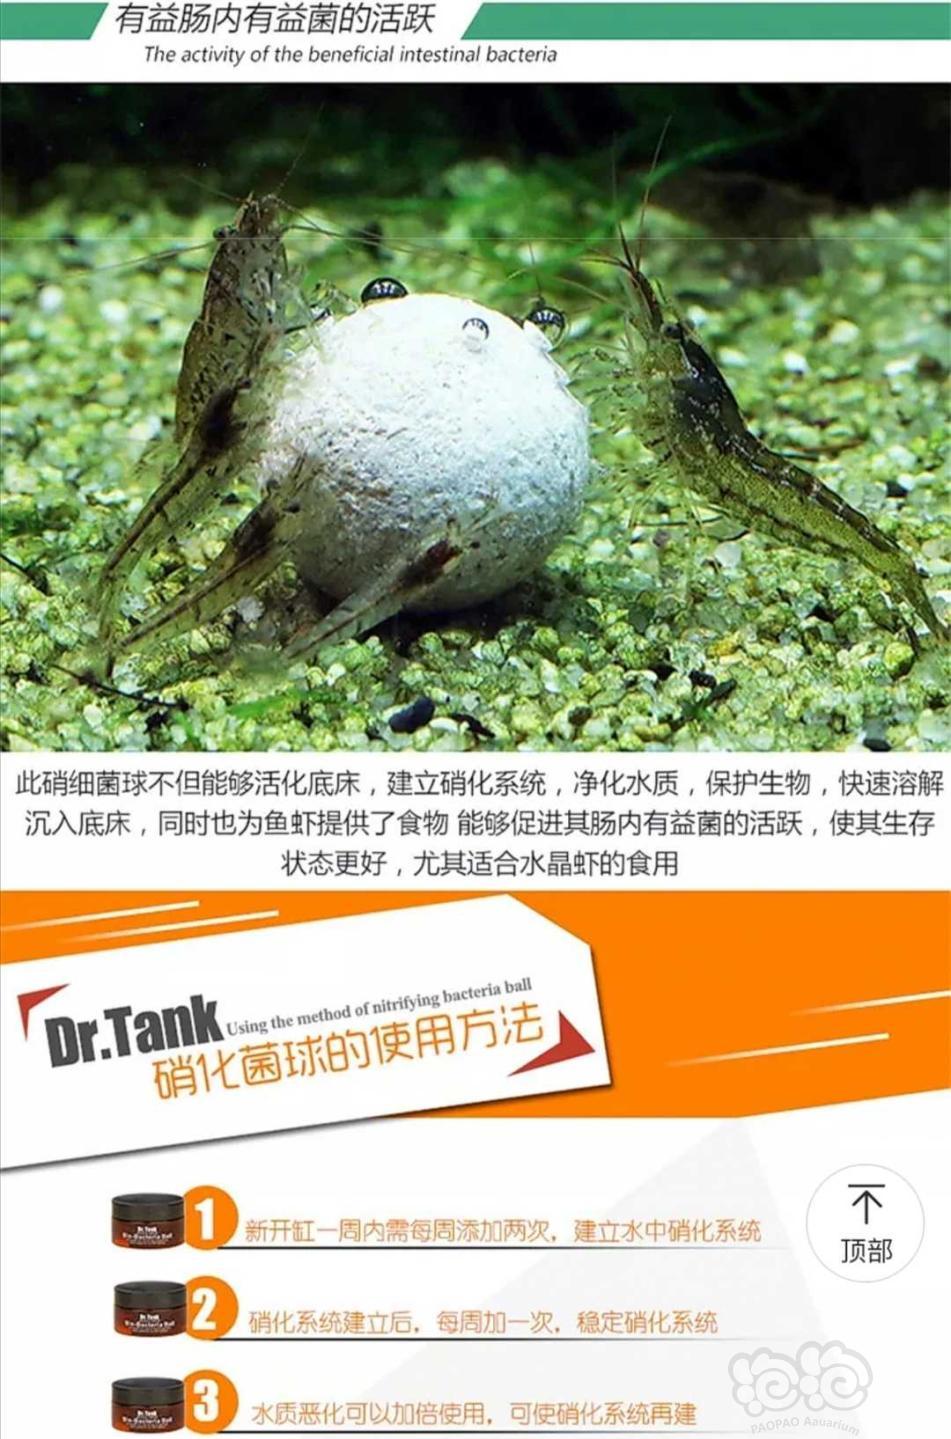 【用品】2019-12-02#RMB拍卖坦克二代硝化细菌球三粒装*3盒-图1